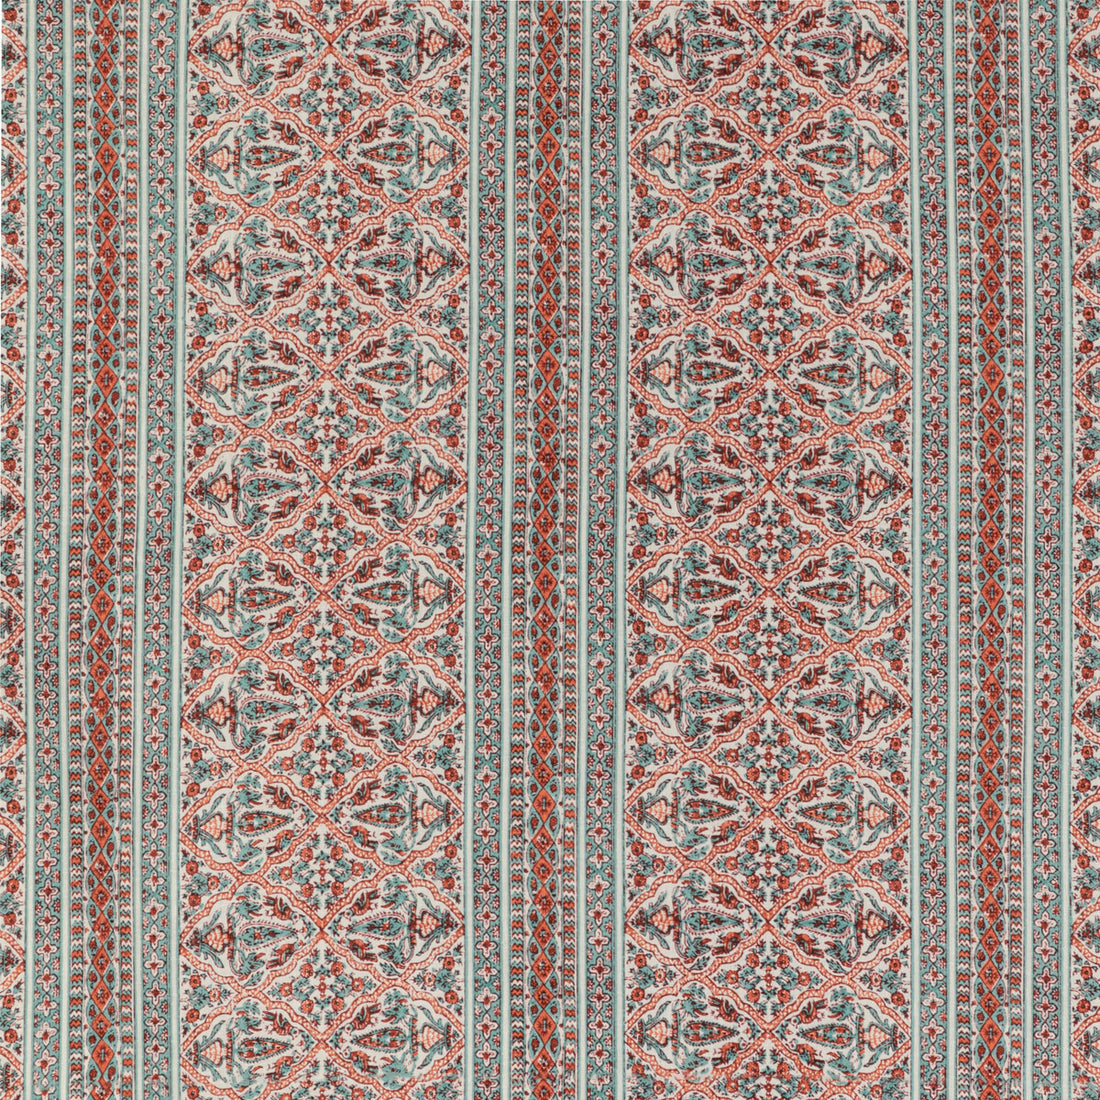 Kravet Basics fabric in mysore-19 color - pattern MYSORE.19.0 - by Kravet Basics in the L&